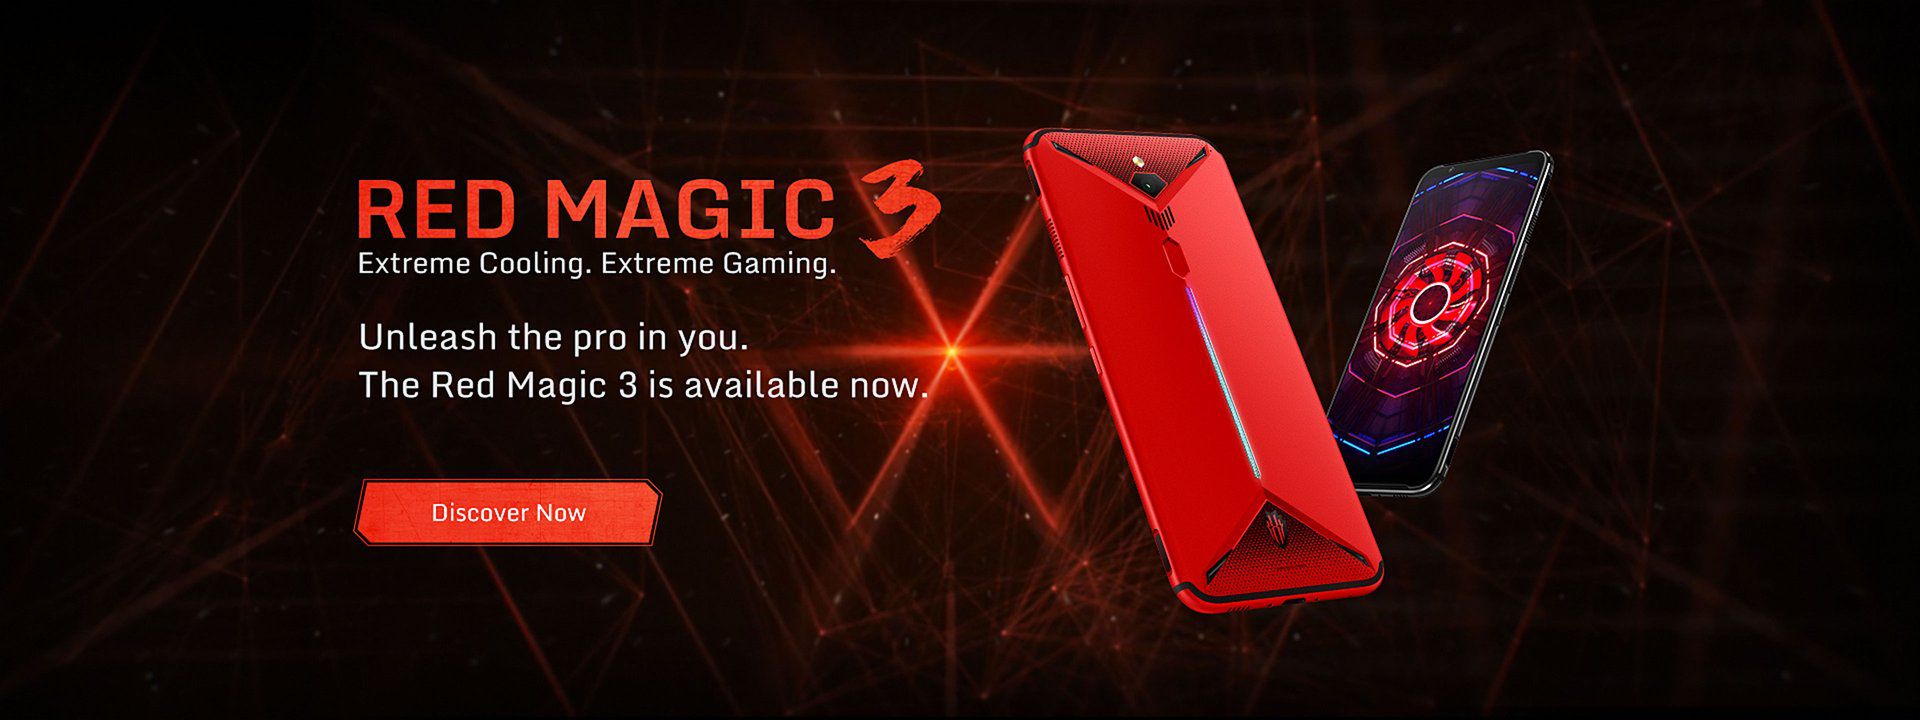 Red Magic 3 è lo smartphone da gaming perfetto per chi cerca un dispositivo top di gamma ad un prezzo abbordabile